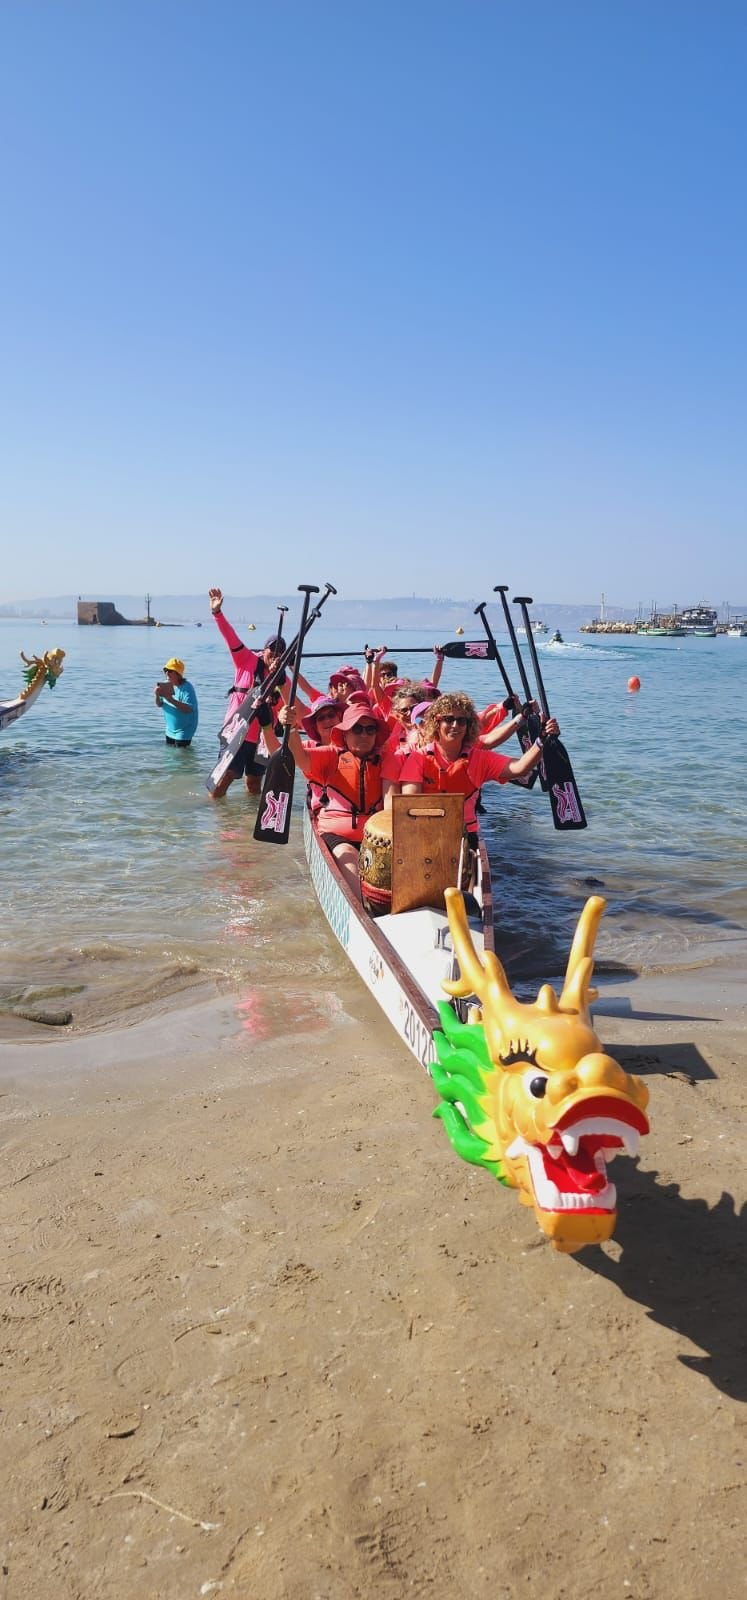 بطولة البلاد ومهرجان قوارب الدراغون بأجمل حلة على شاطئ العرب في عكا-4